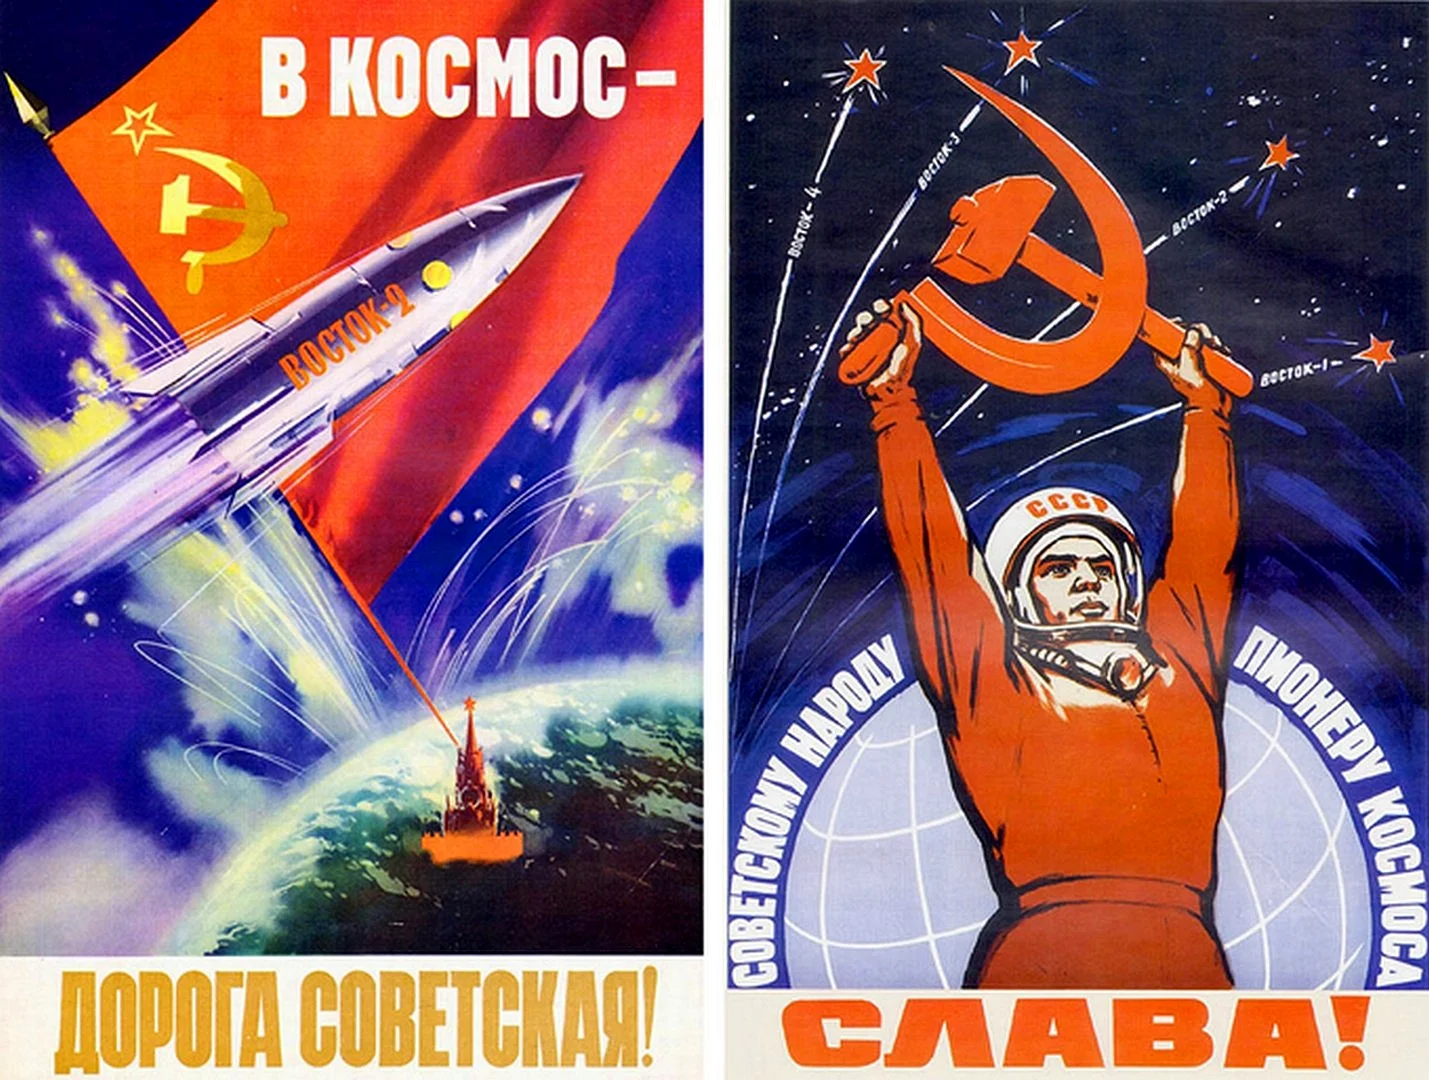 Плакат космонавтики